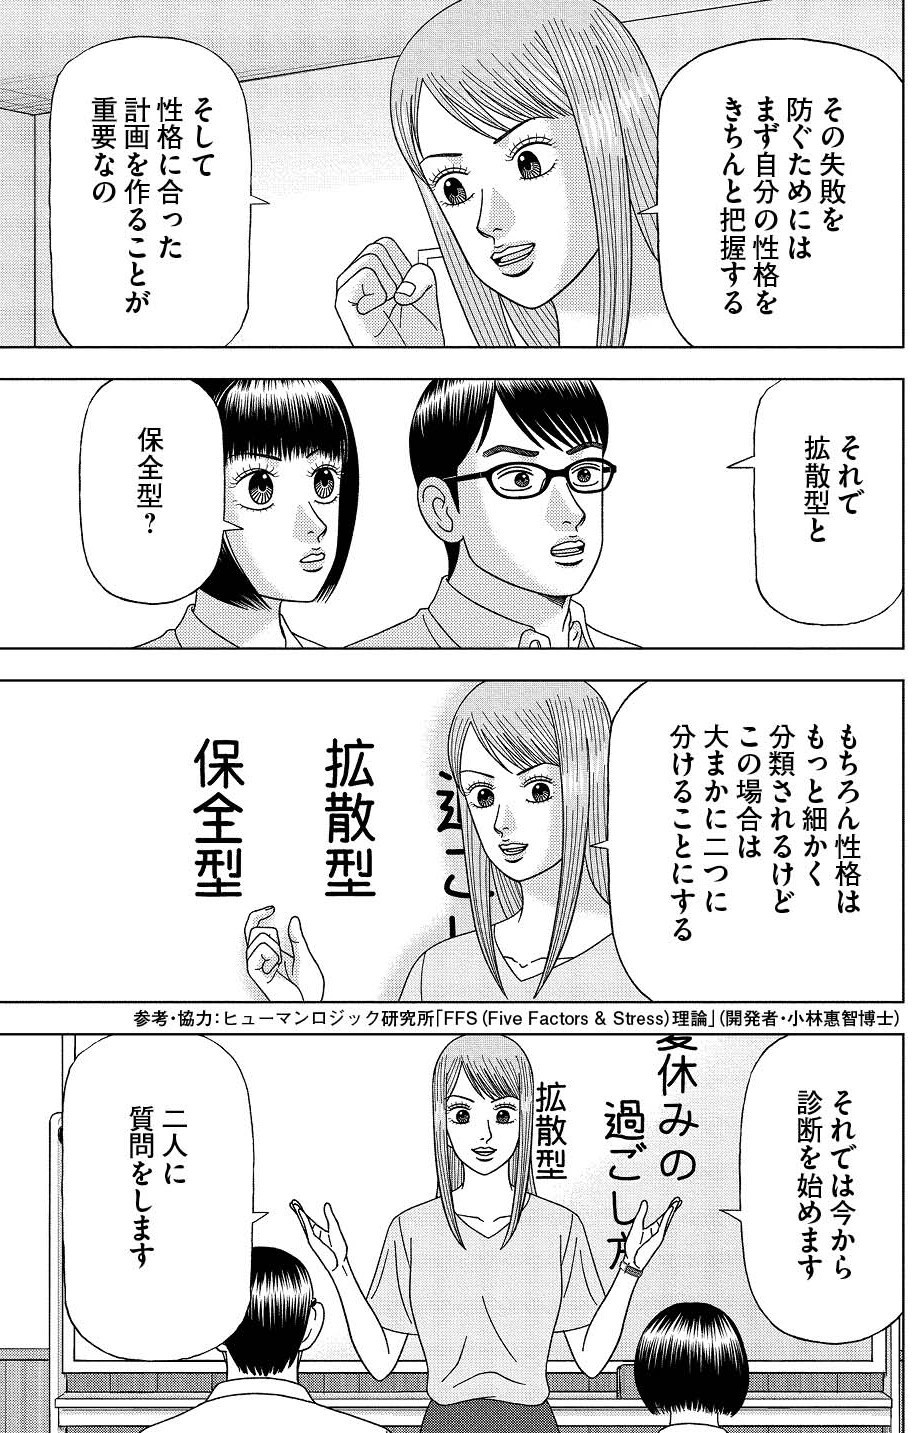 【漫画】 #ドラゴン桜2 94限目「タイプ別 夏休みの過ごし方 ...